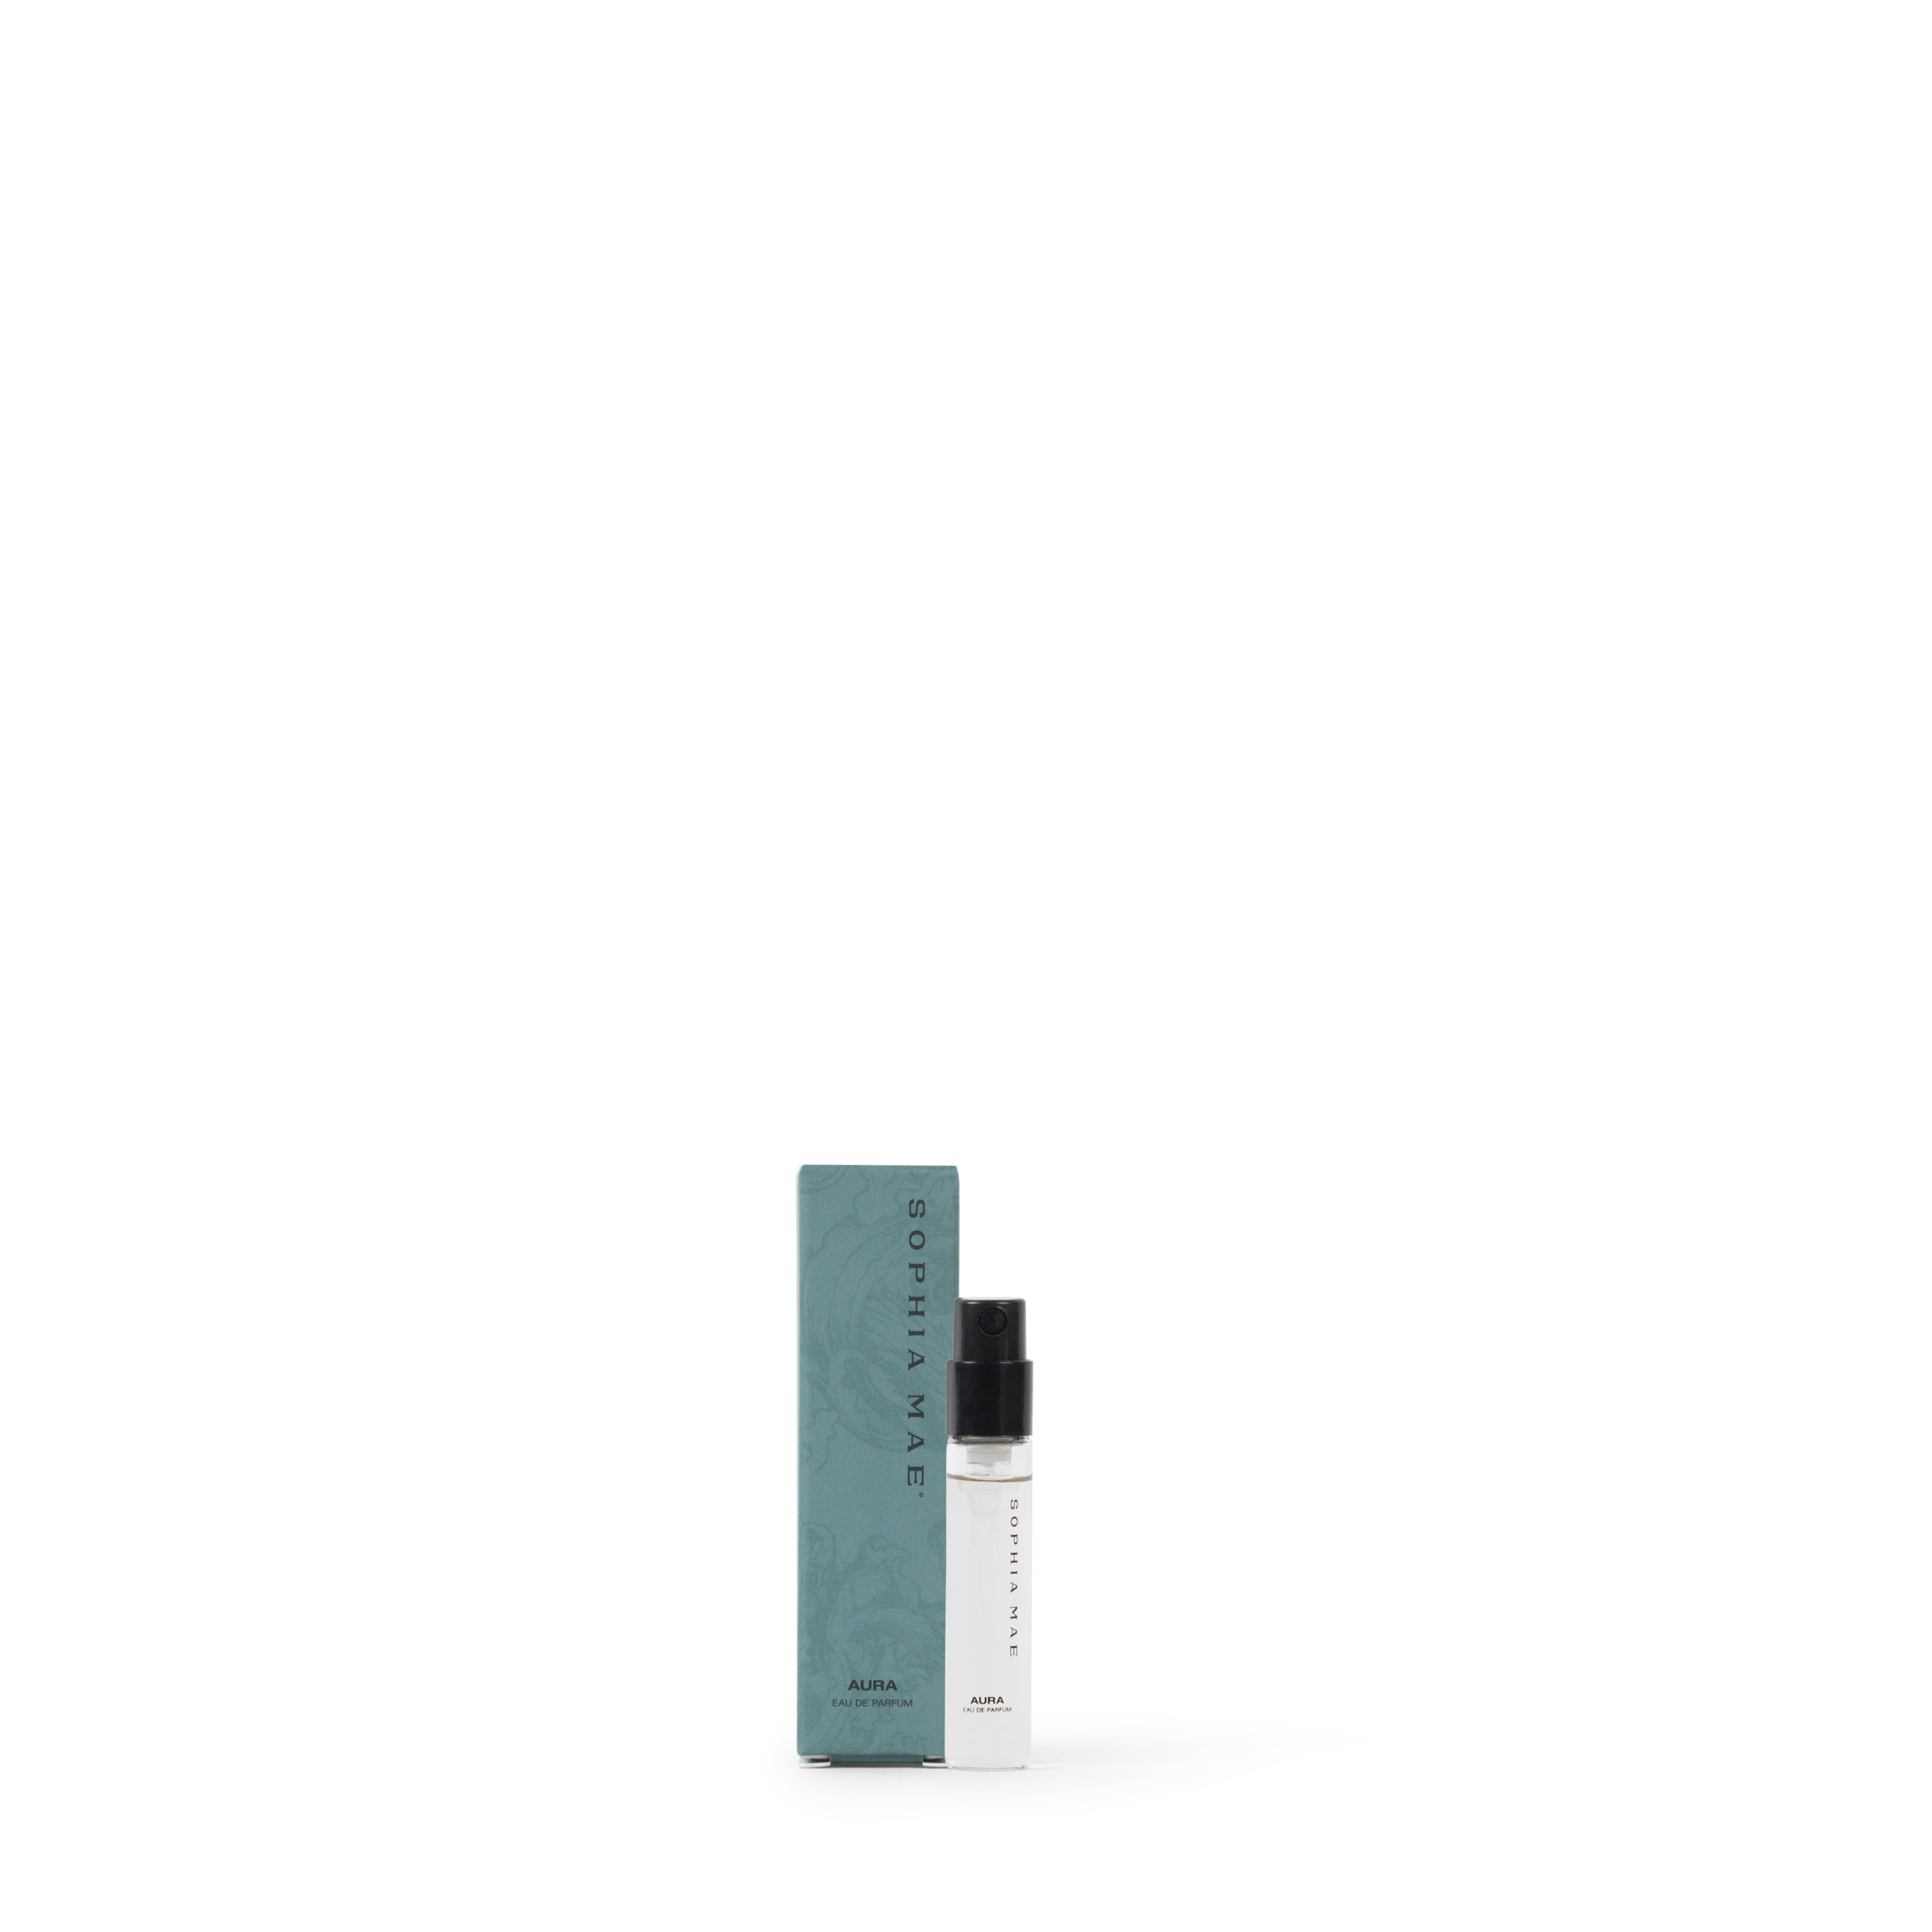 Aura eau de parfum tester size (2ml)